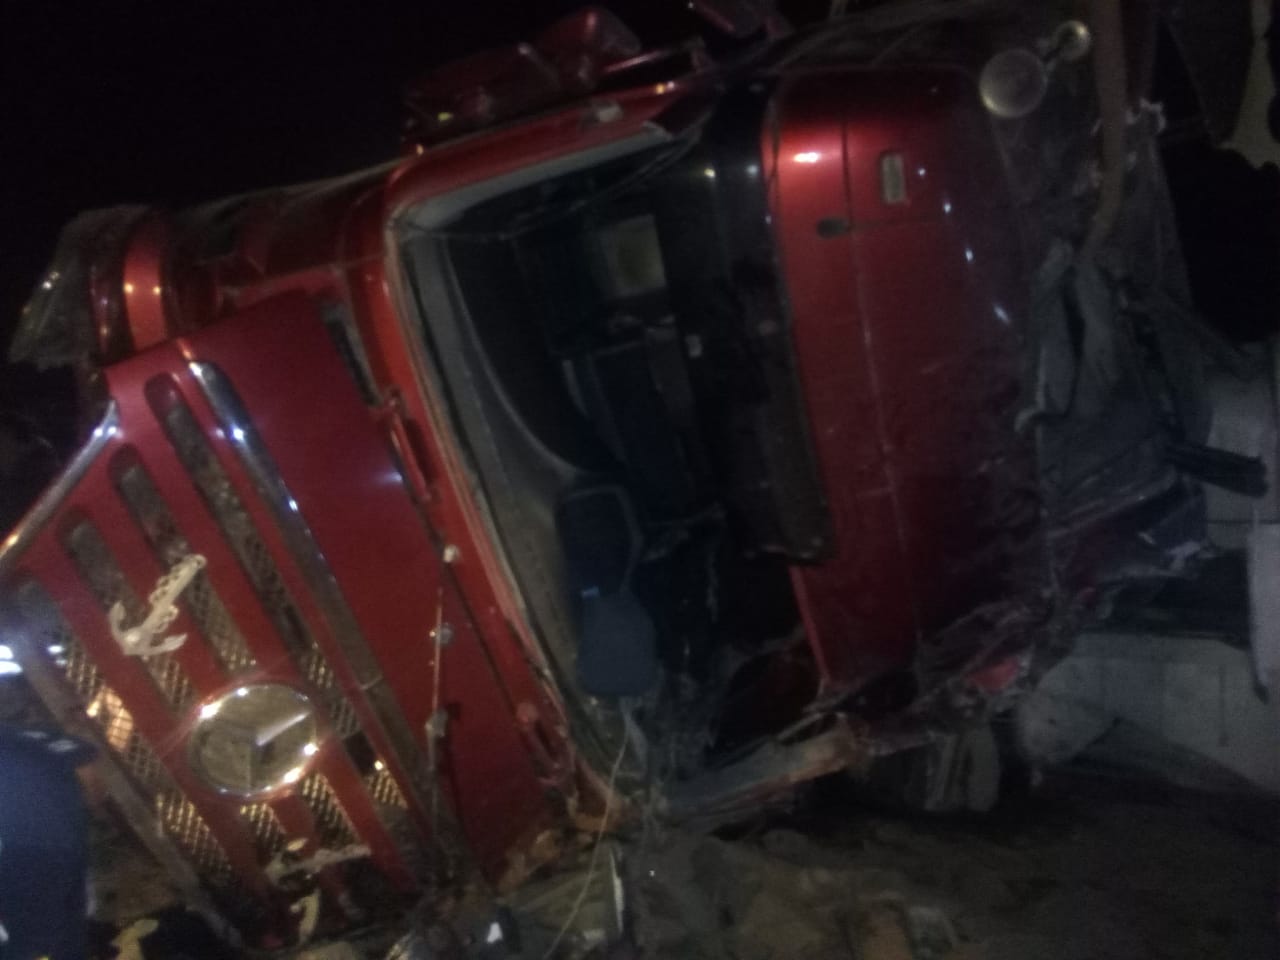  معان : وفاة مواطن بحادث تدهور على طريق المحمدية - مصور